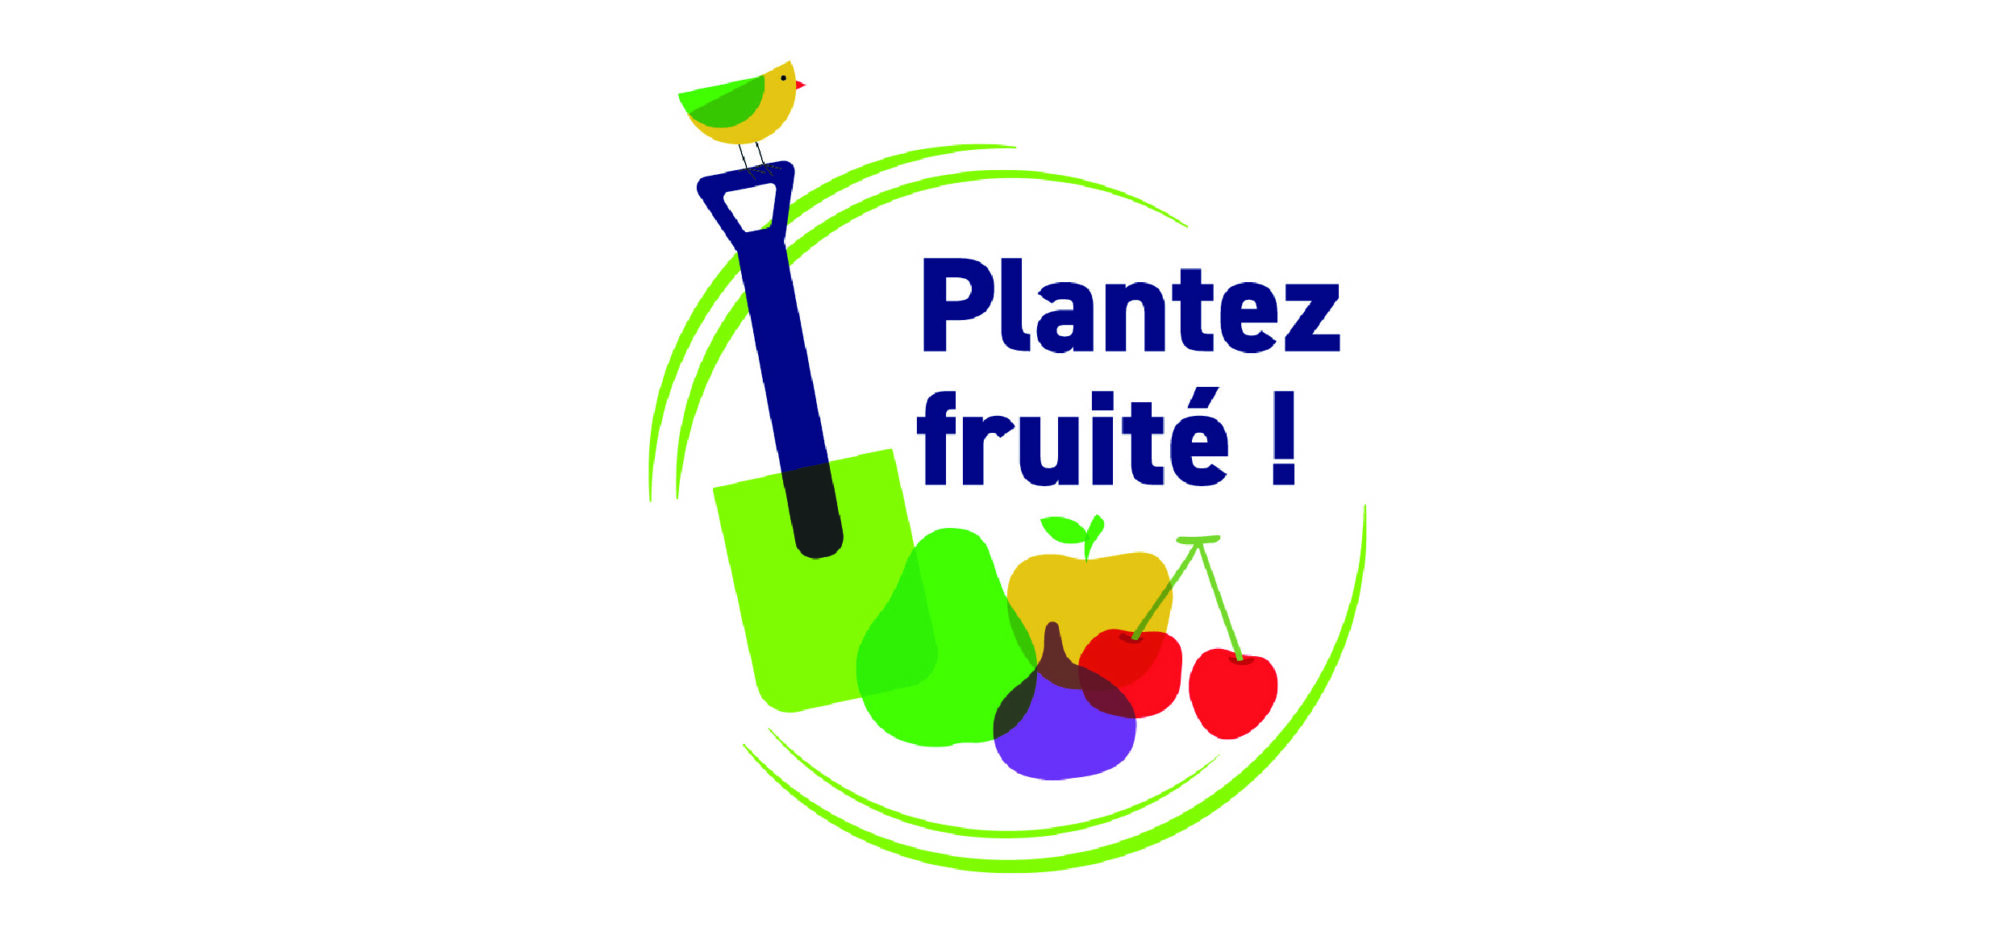 plantez_fruite